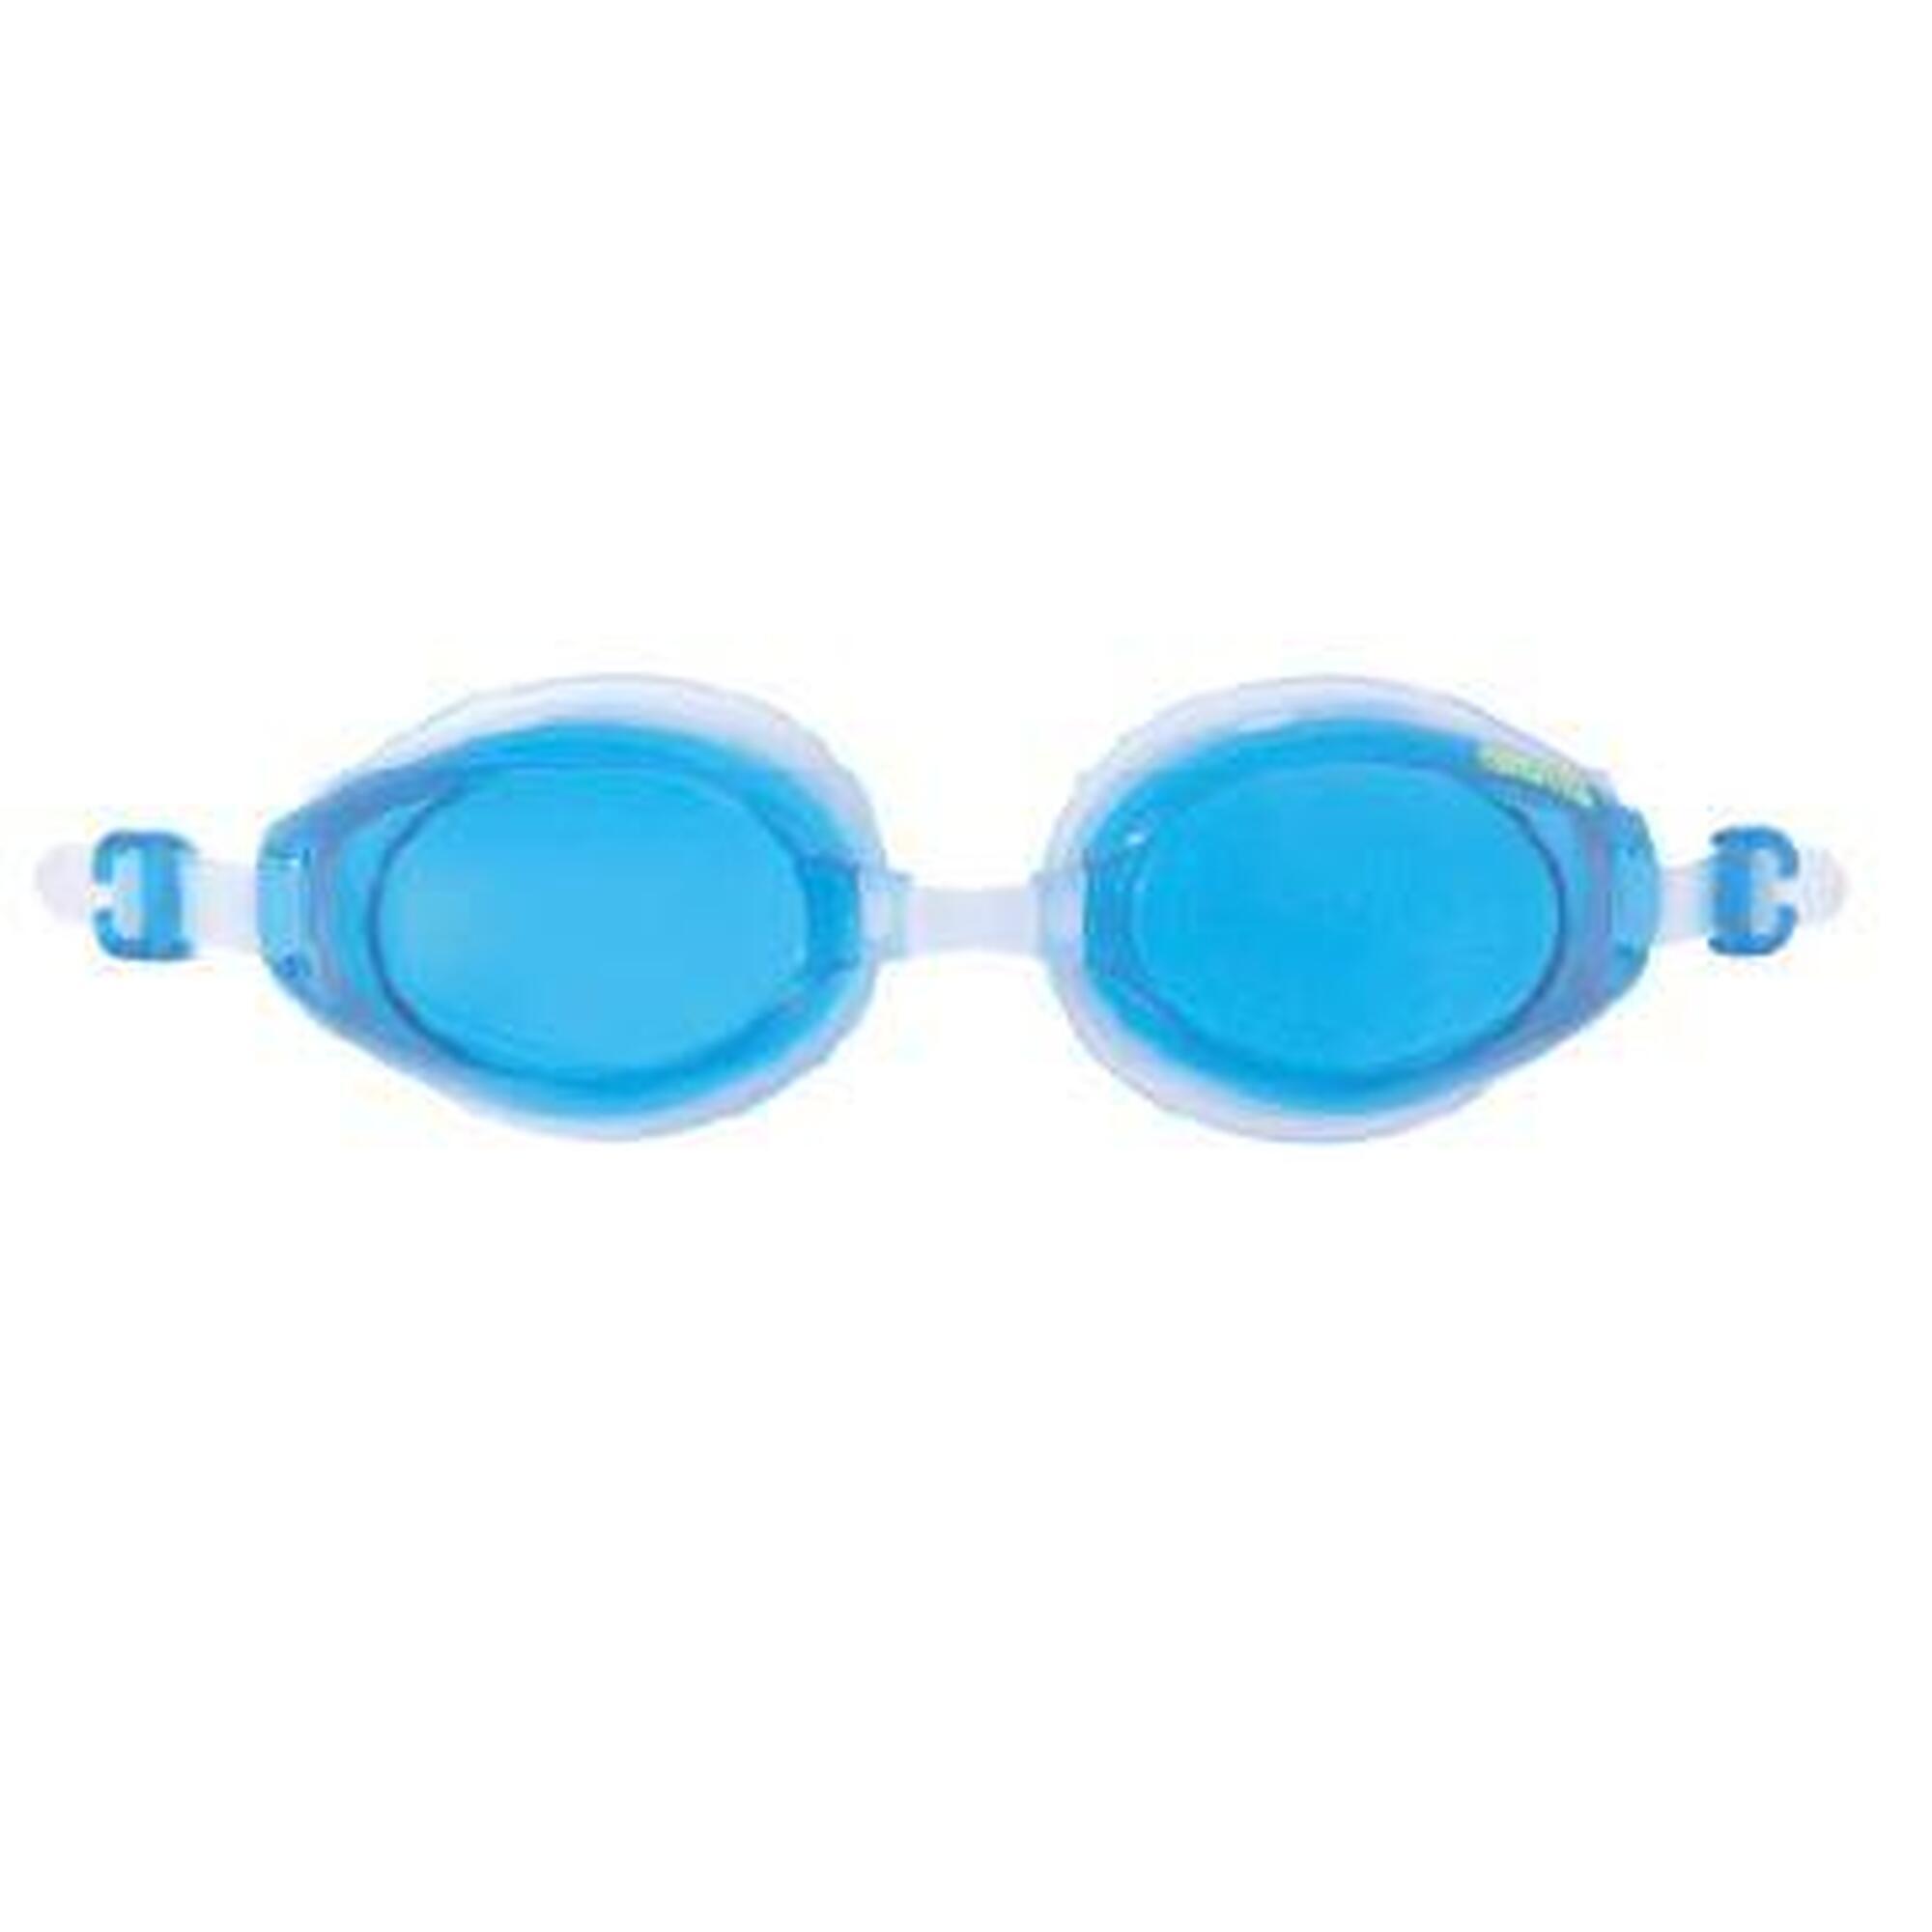 日本製廣角泳鏡 - 藍色